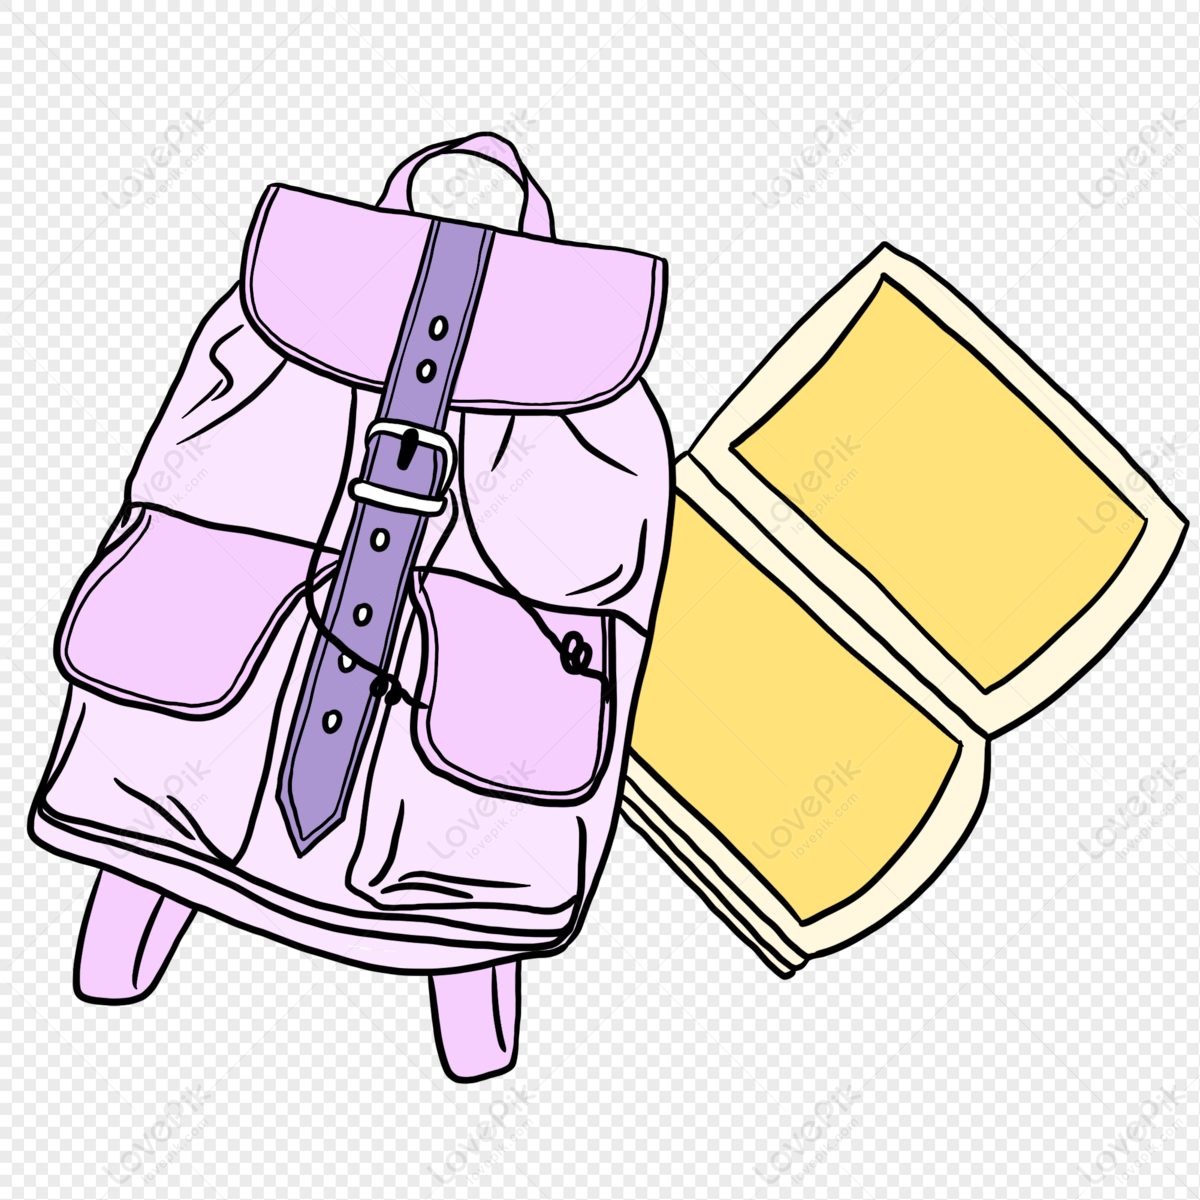 Rounded Backpack Bag Drawing Clipart Set / Outline & Stamp Drawing  Illustrations / School Bag / Back to School / PNG, JPG, SVG, Eps - Etsy  Denmark